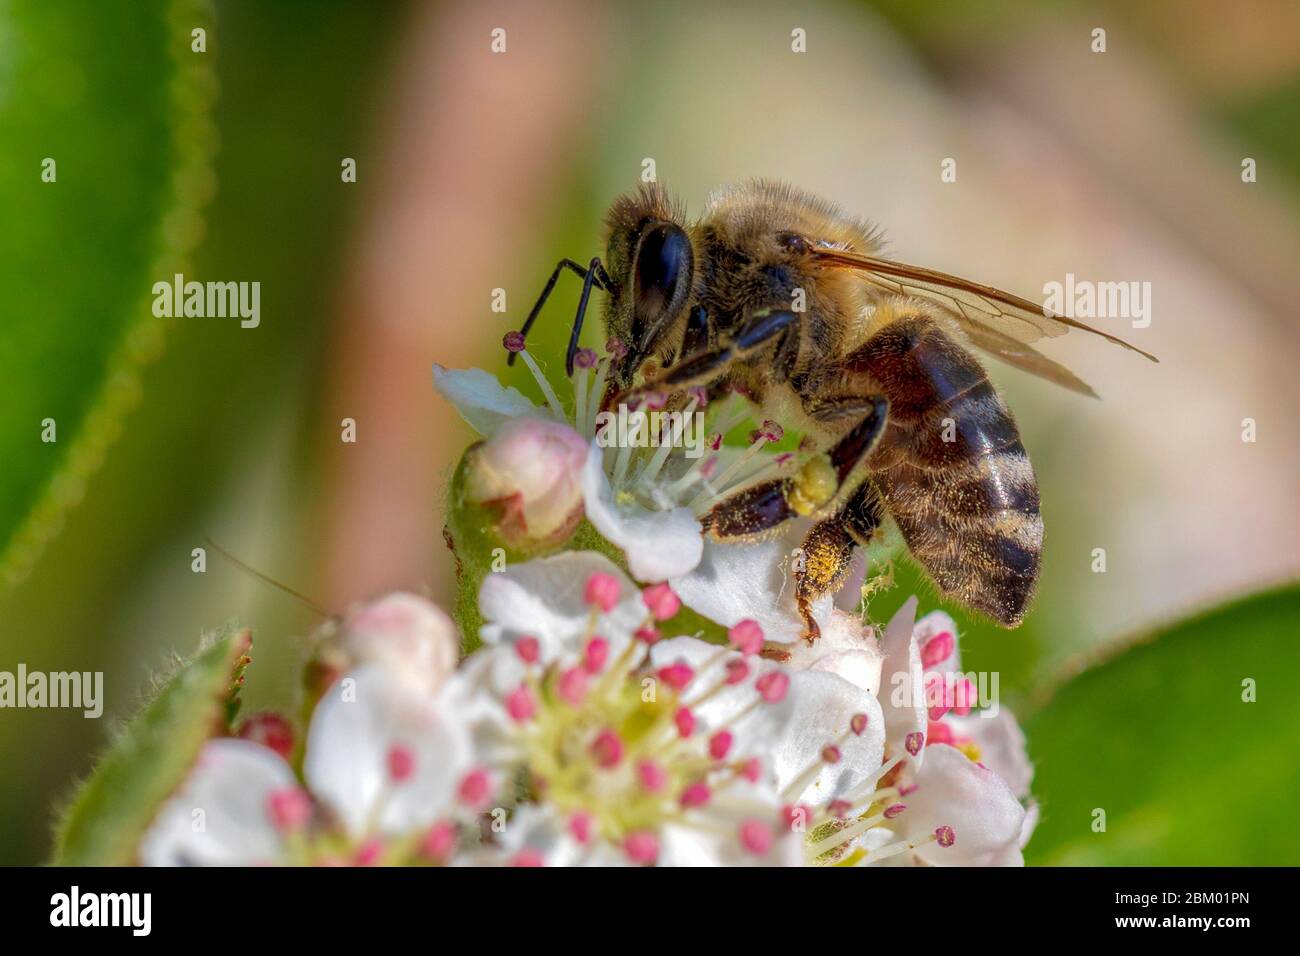 Gros plan sur l'abeille sur une fleur Aronia fleurs au printemps matin. Banque D'Images